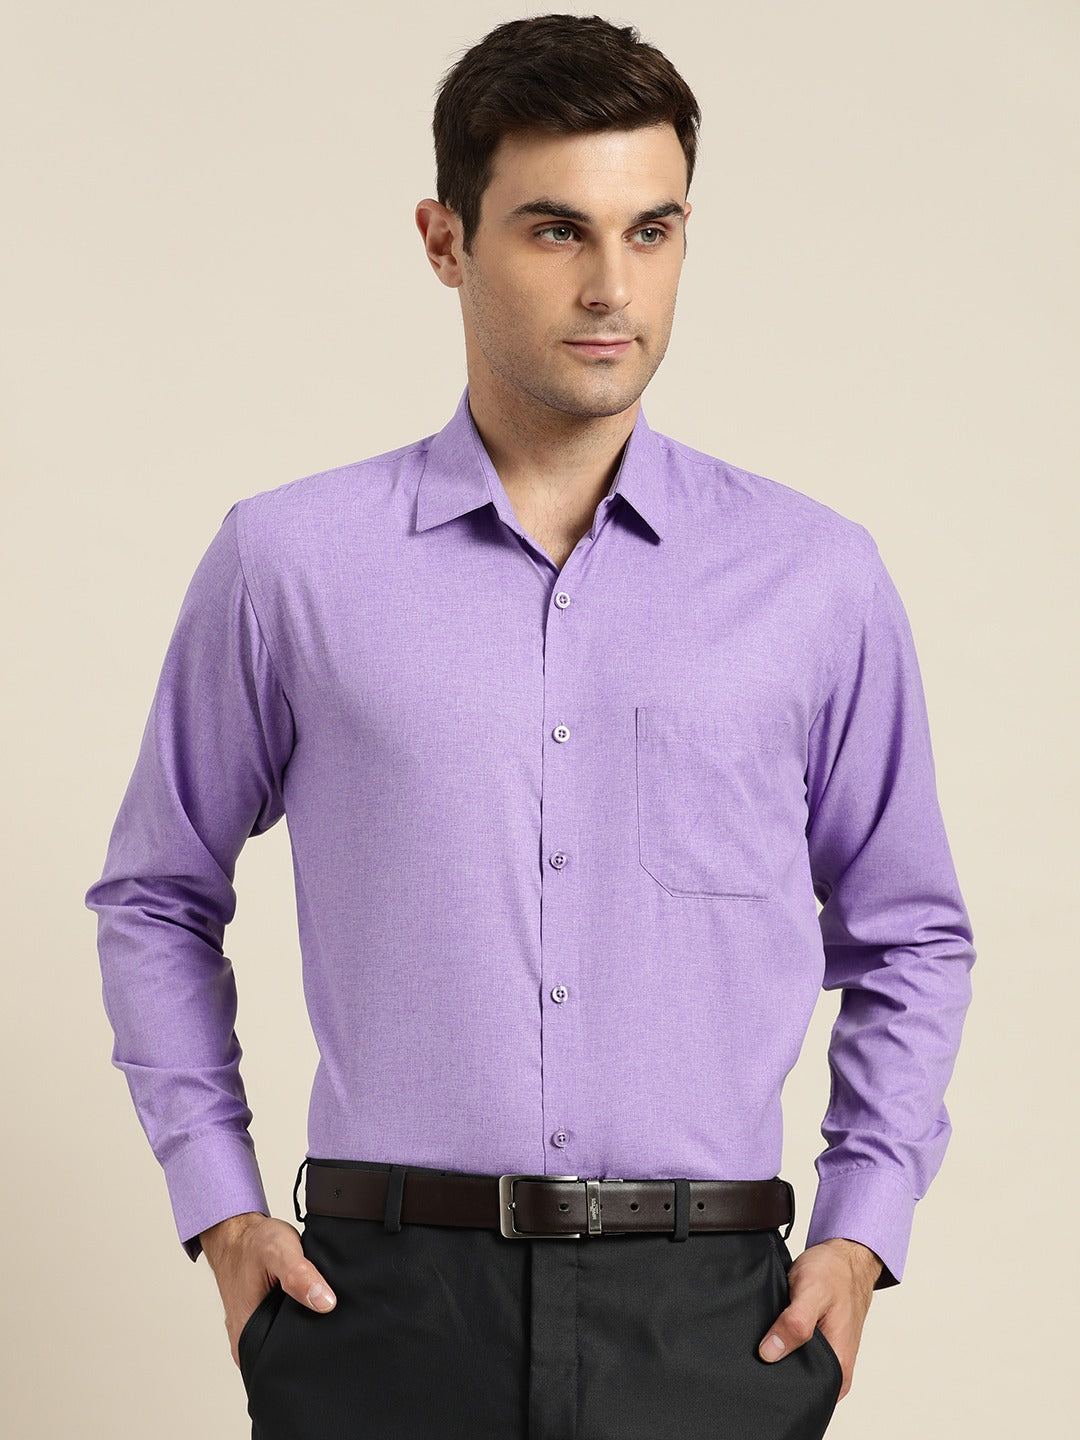 Men's Cotton Purple Casual Shirt